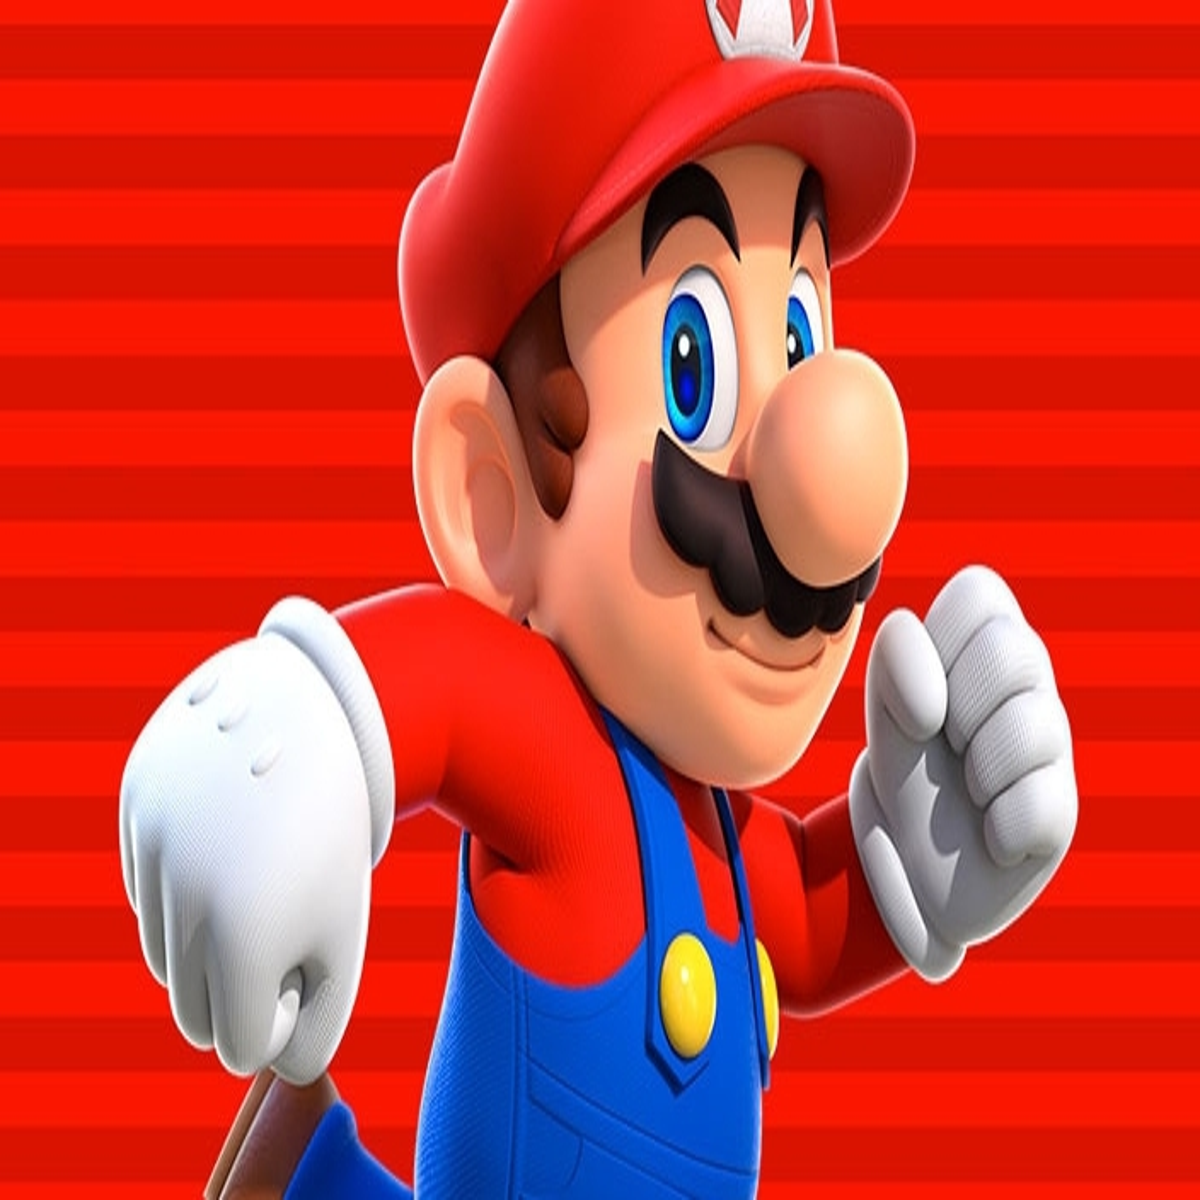 17 coisas que você provavelmente não sabia sobre o Super Mario